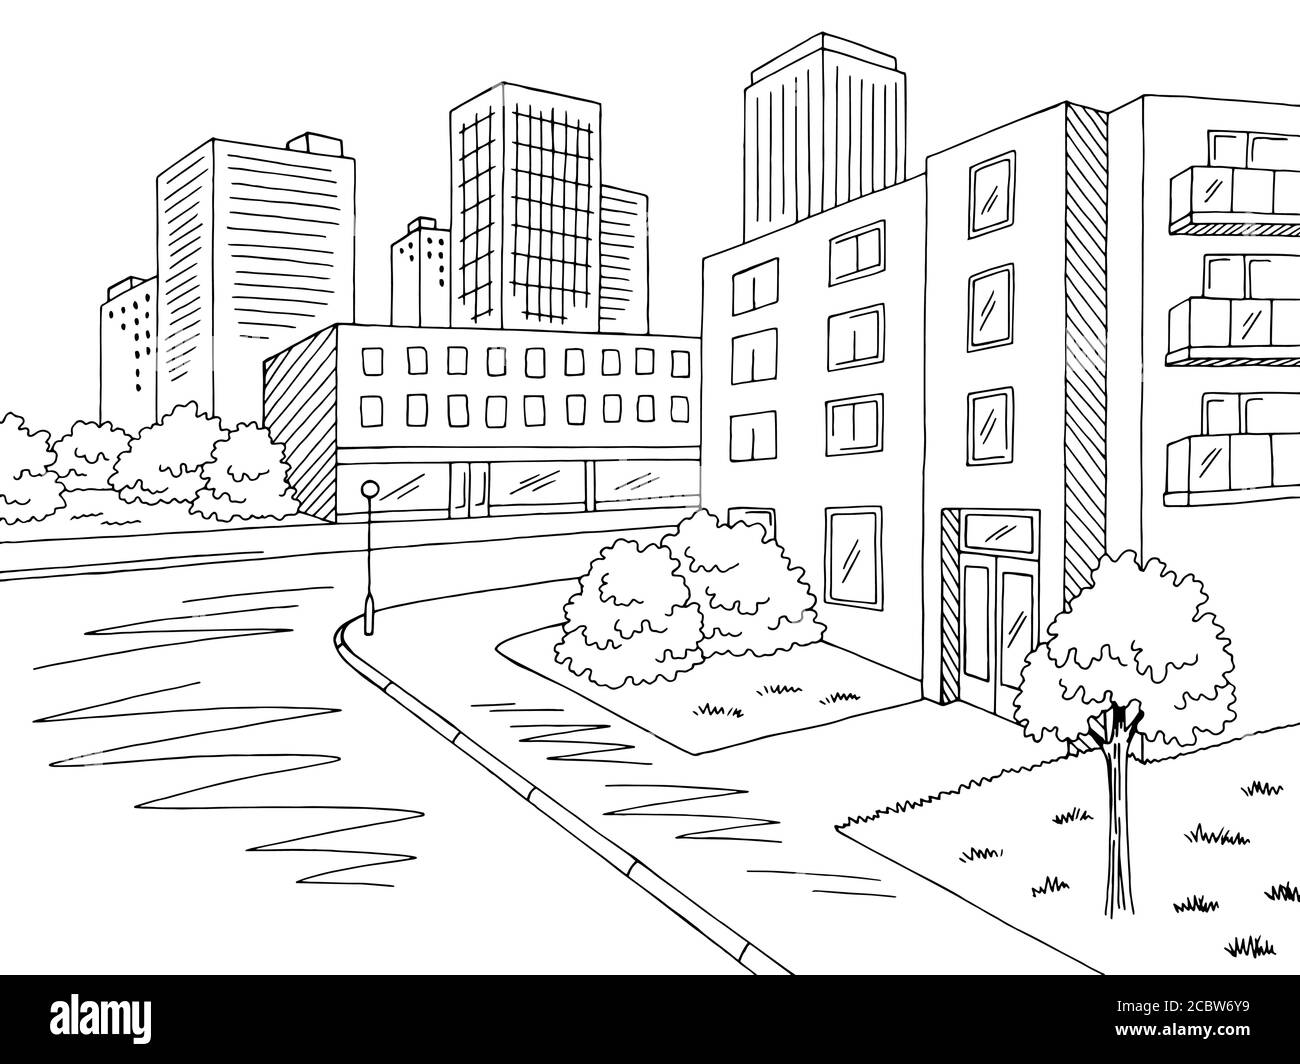 Wohnviertel Straße Straße Grafik schwarz weiß Kreuzung Stadt Landschaft Vektor der Skizzendarstellung Stock Vektor